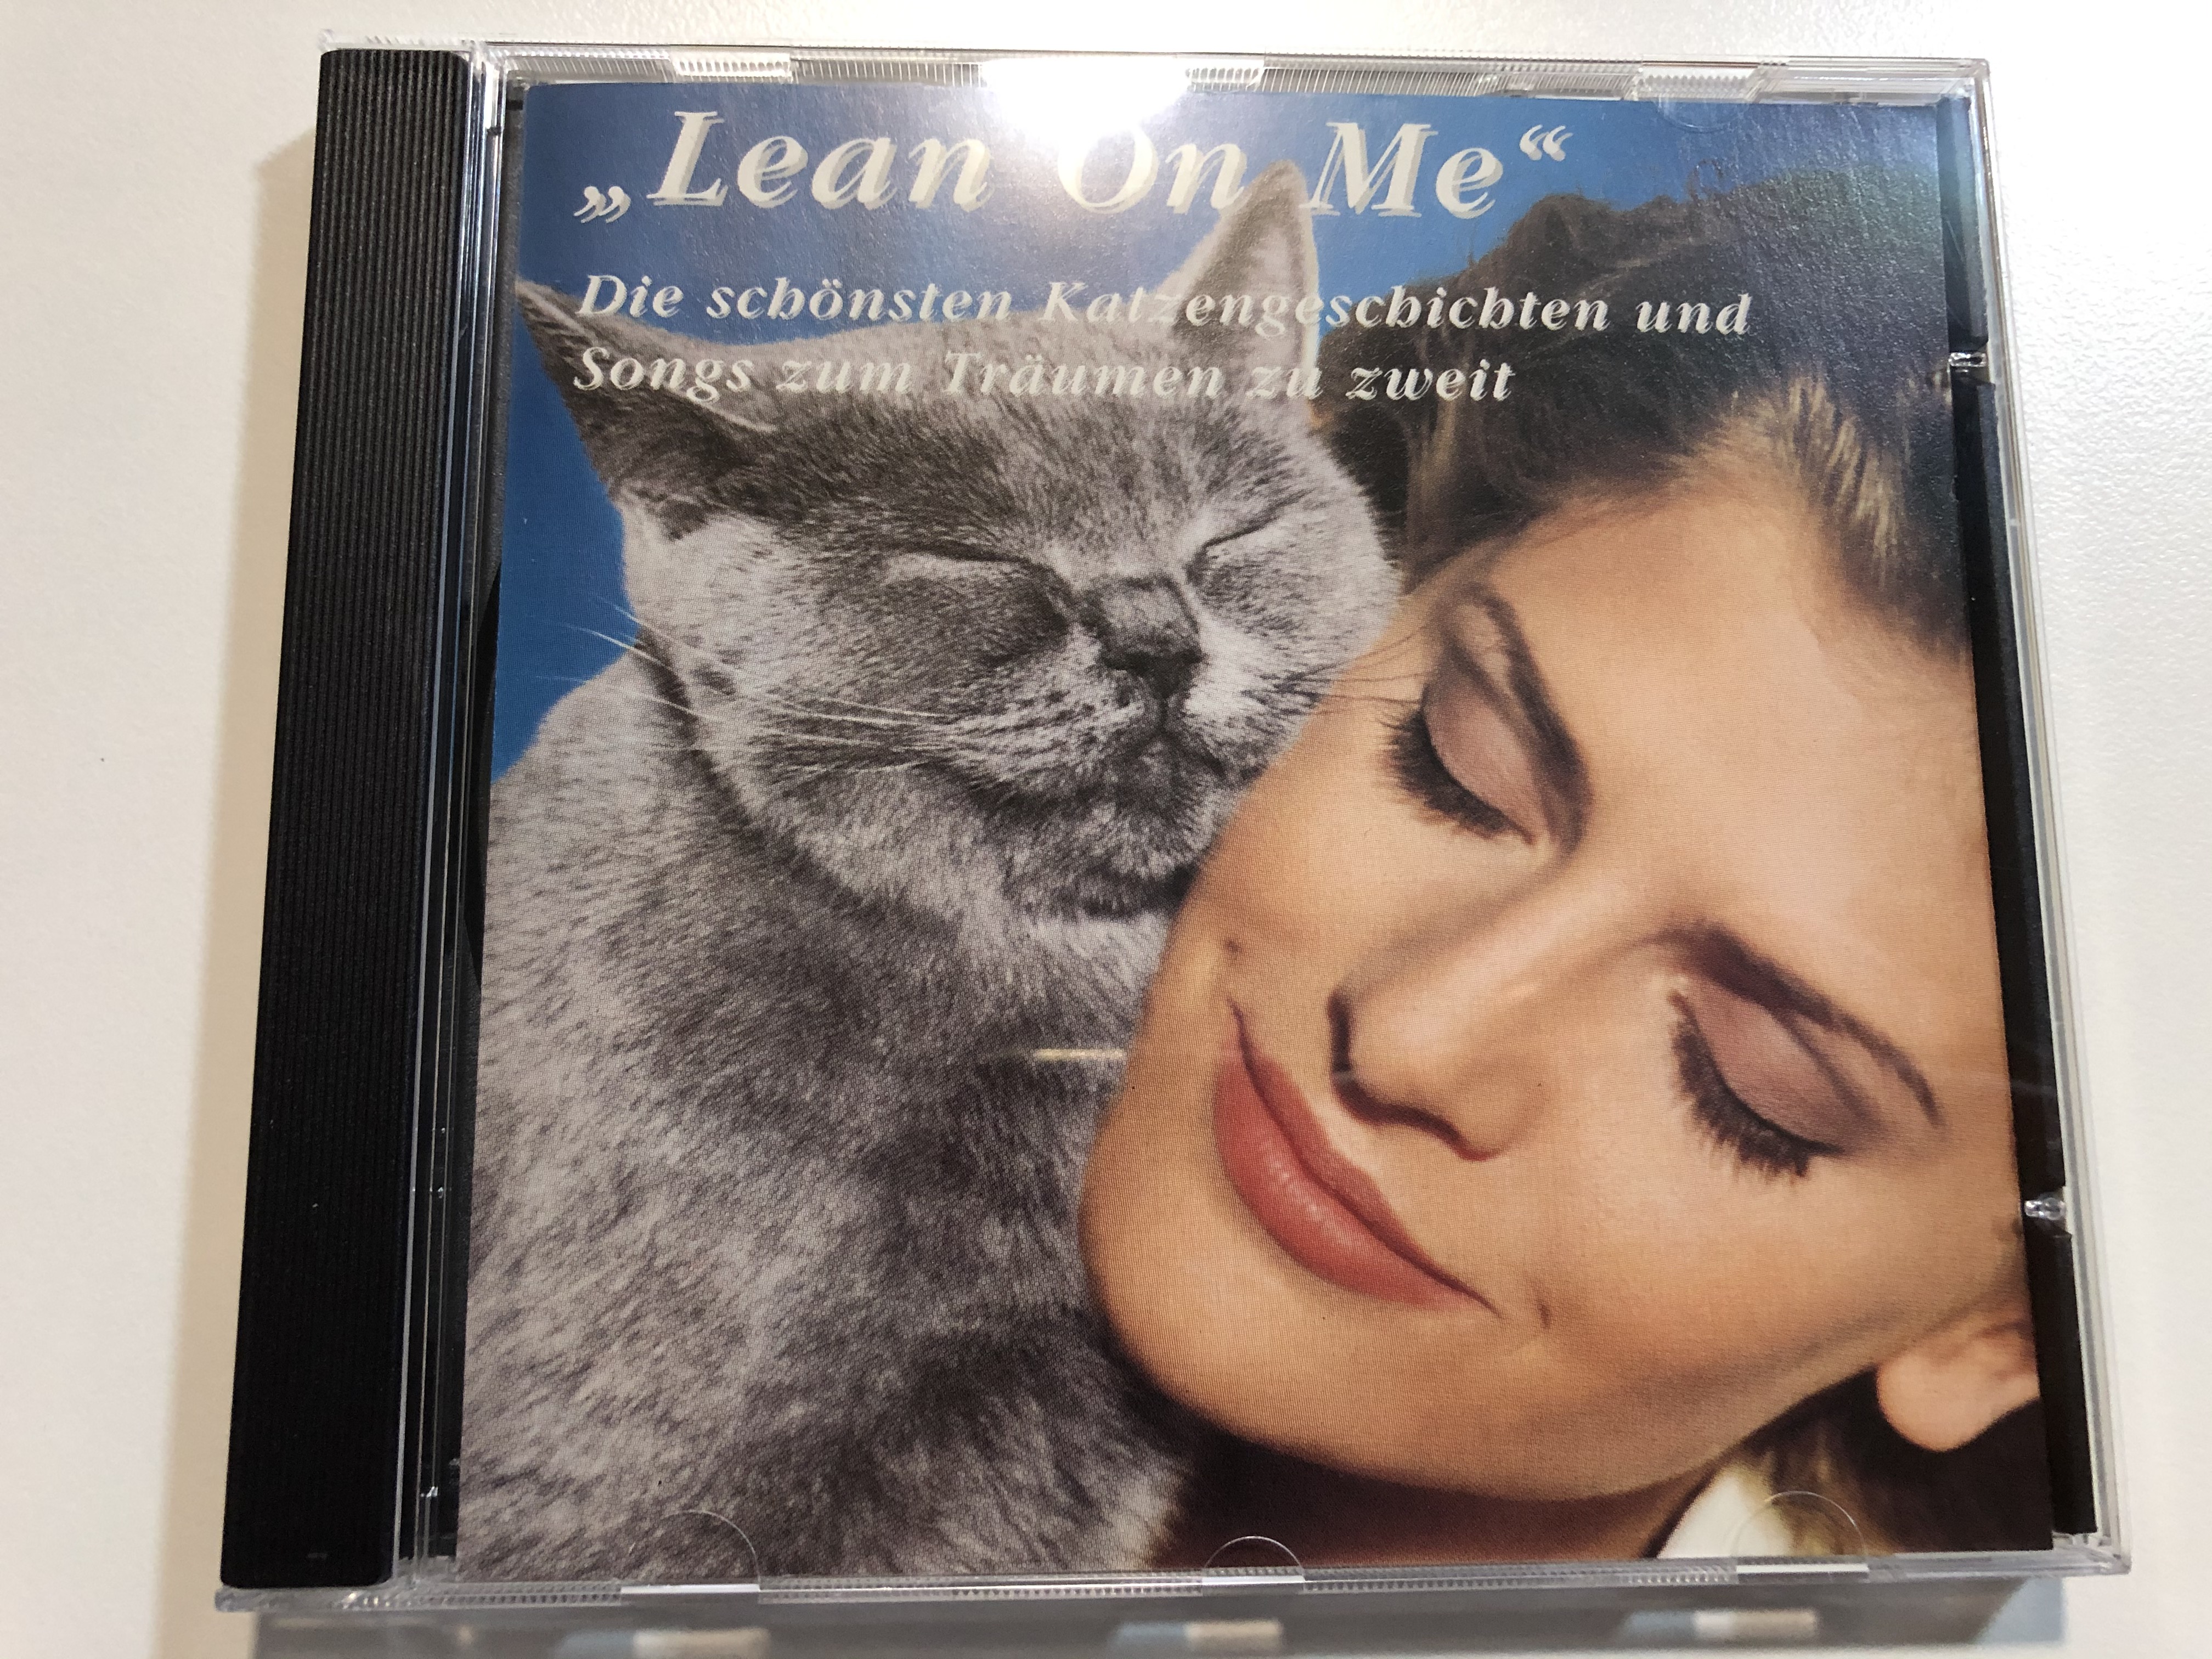 -lean-on-me-die-sch-nsten-katzengeschichten-und-songs-zum-tr-umen-zu-zweit-columbia-audio-cd-1995-478488-2-1-.jpg